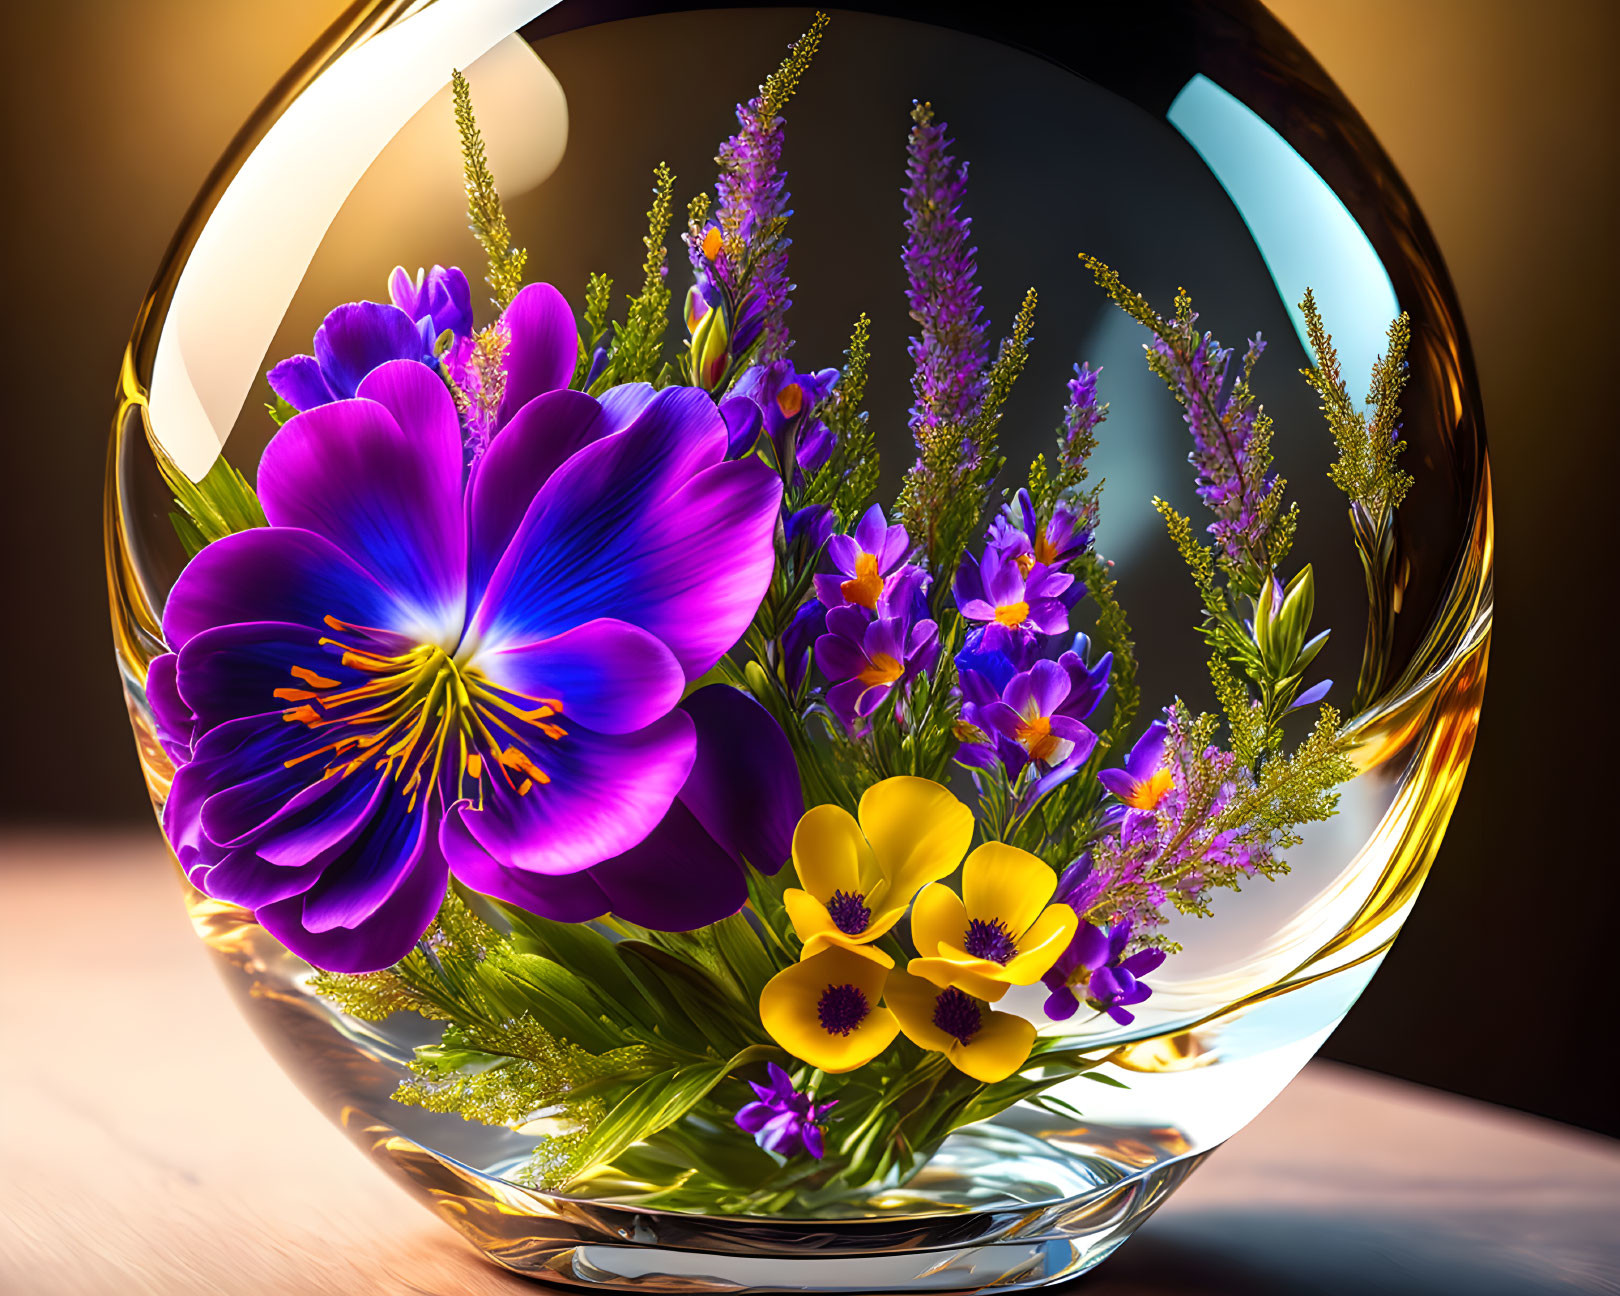 flowers in glassbowl